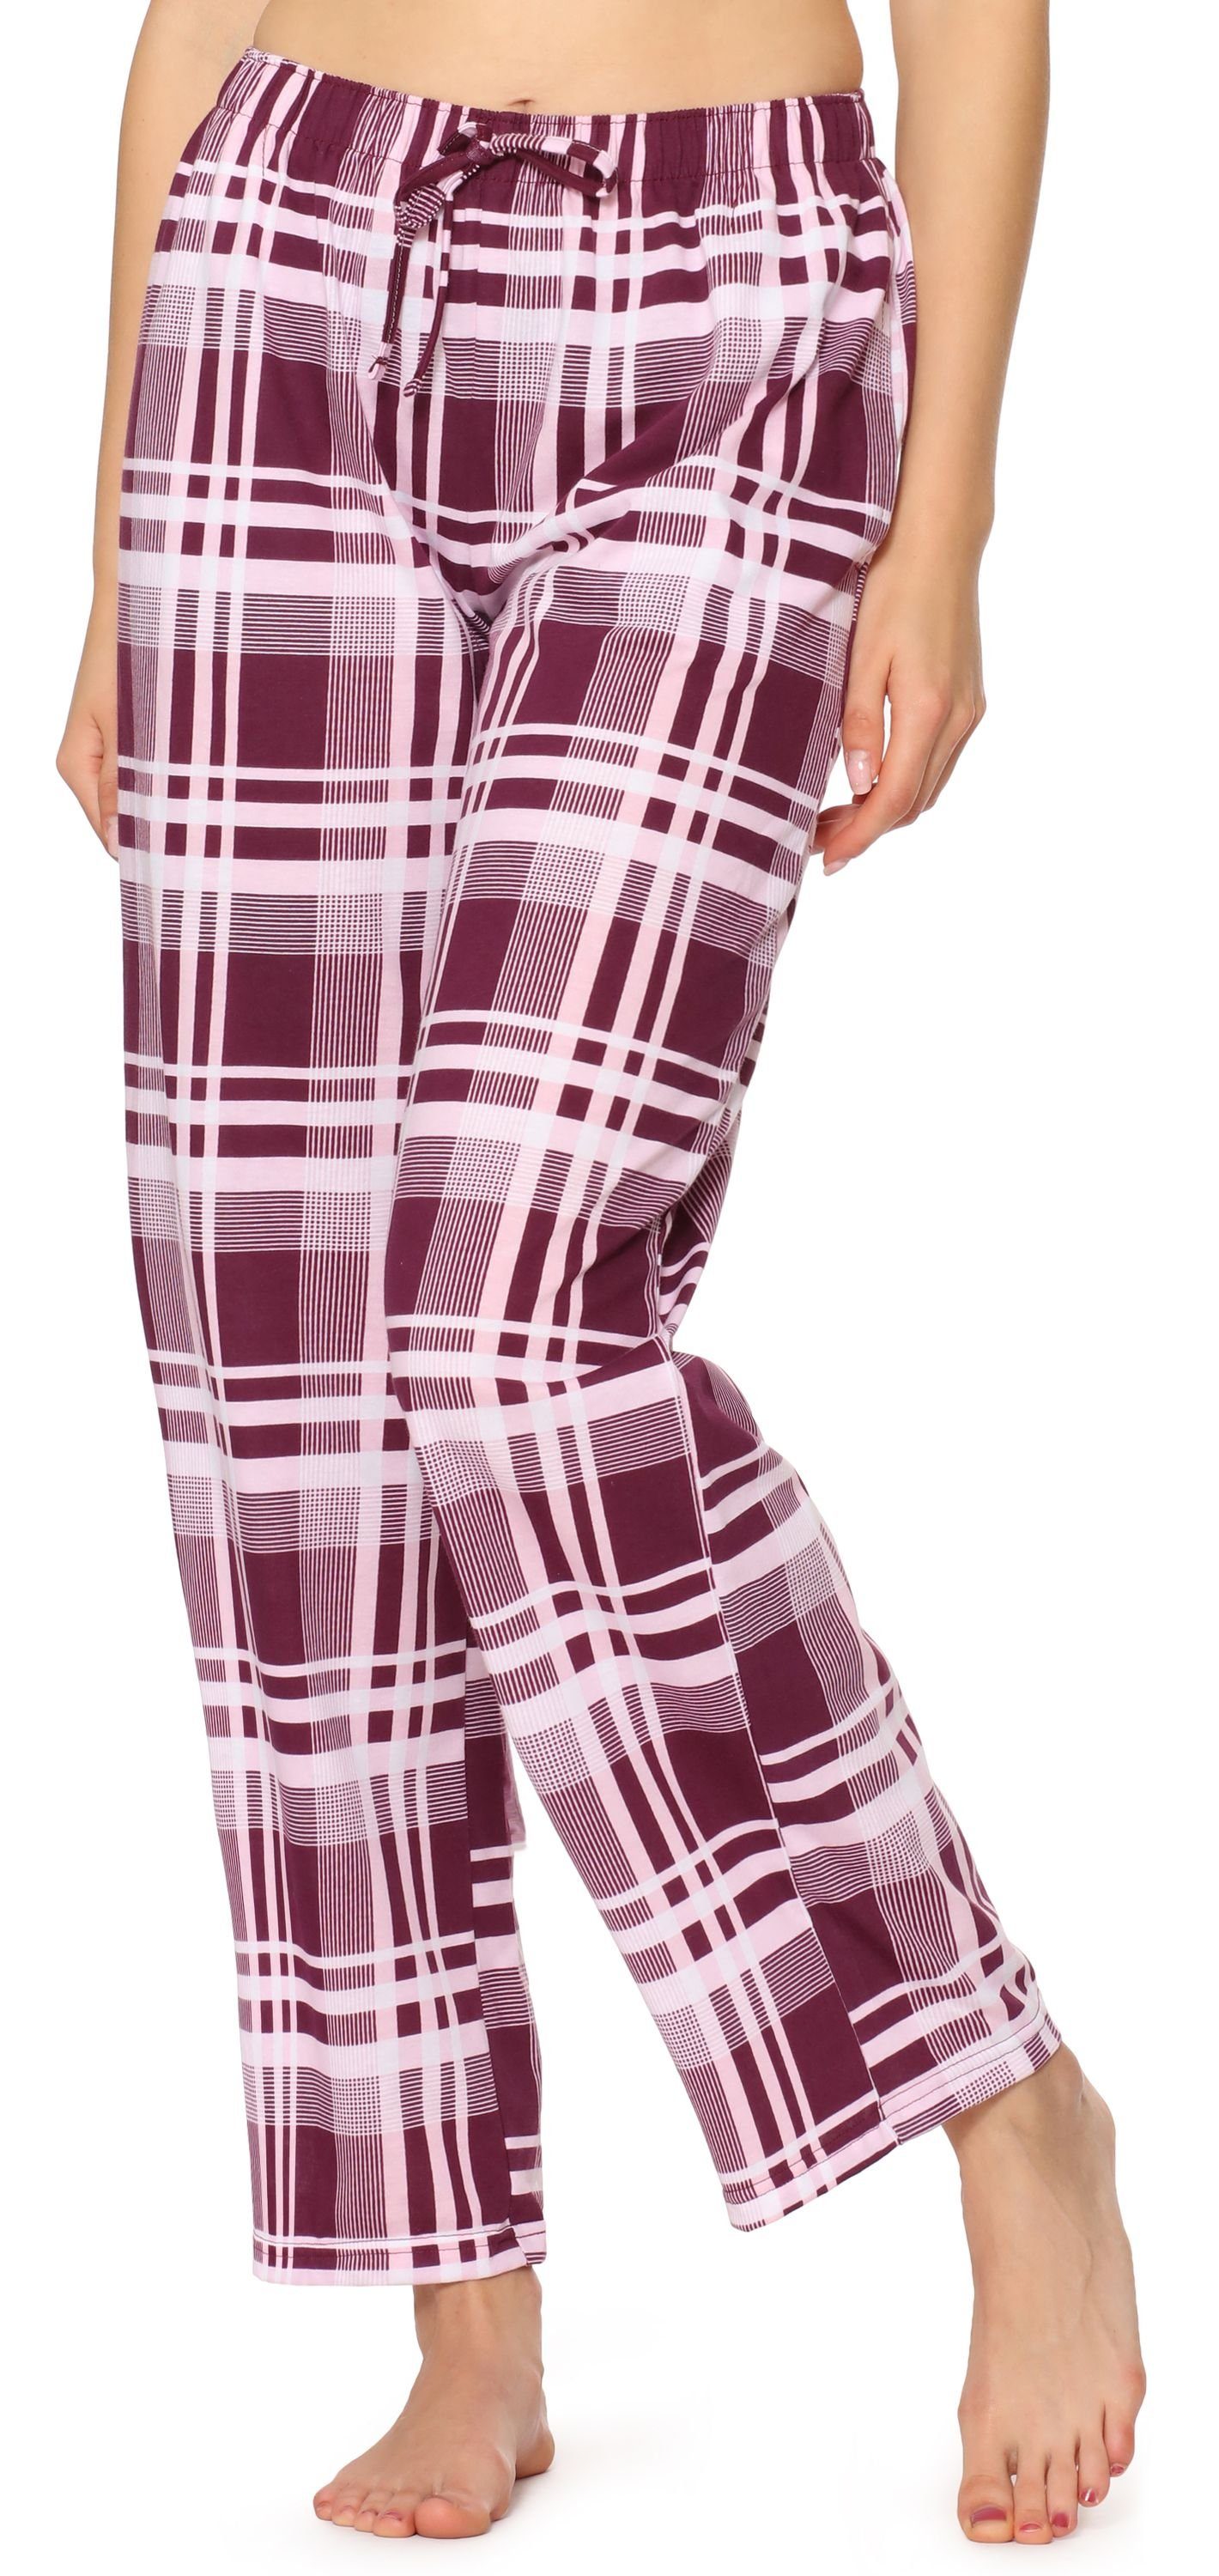 Style elastischer Pyjamashorts Damen MPP-001 Bund Schlafanzugshose Weinrot/Kariert (1-tlg) Merry